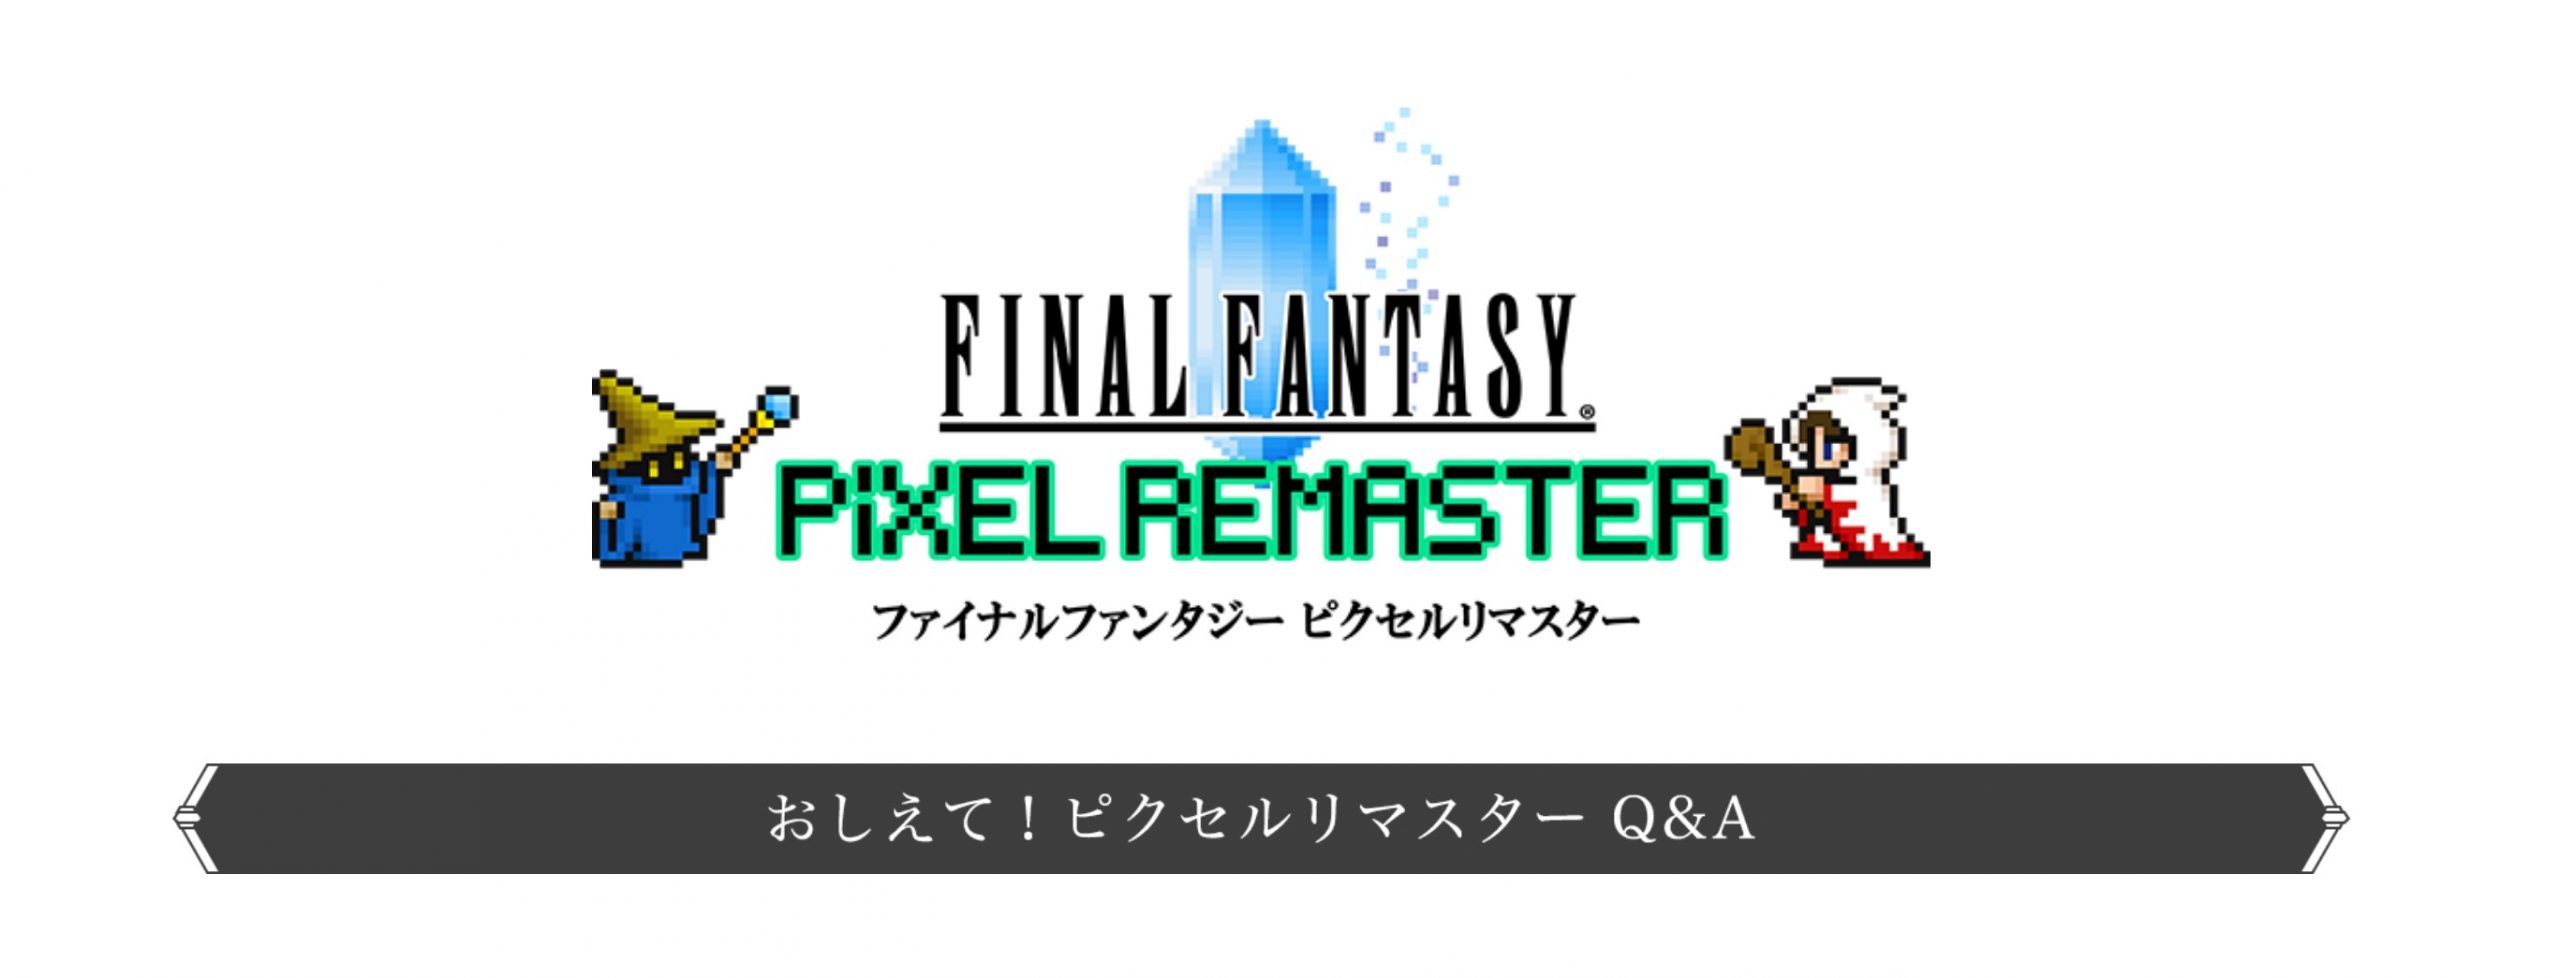 download ff6 pixel remaster platforms